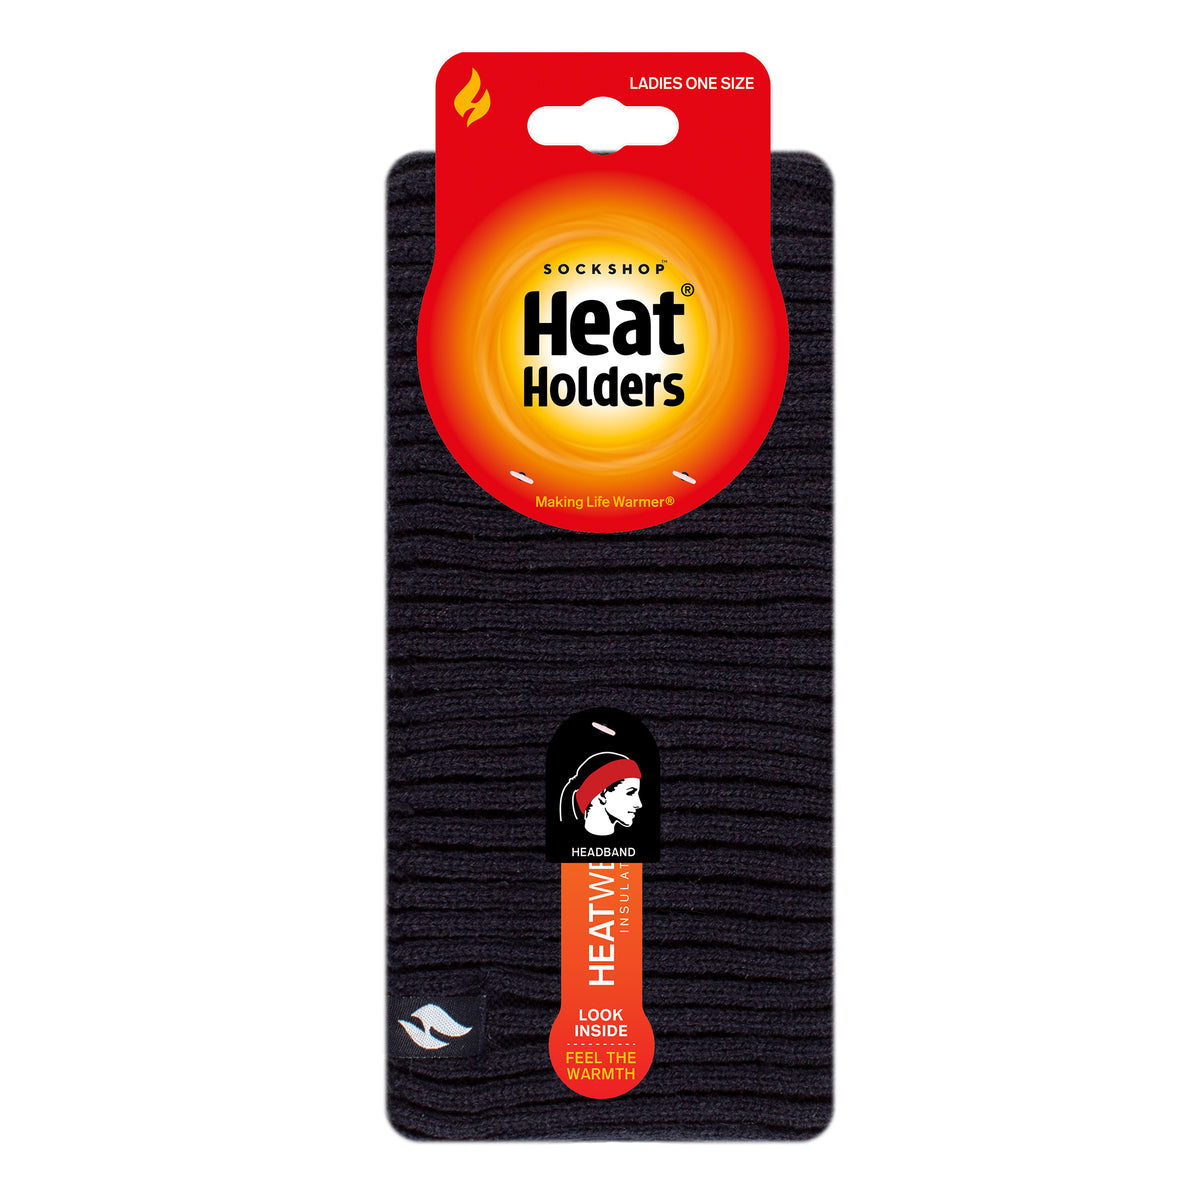 Bandeau Hiver très chaud Femme de Heat Holders - Acheter sur Douce